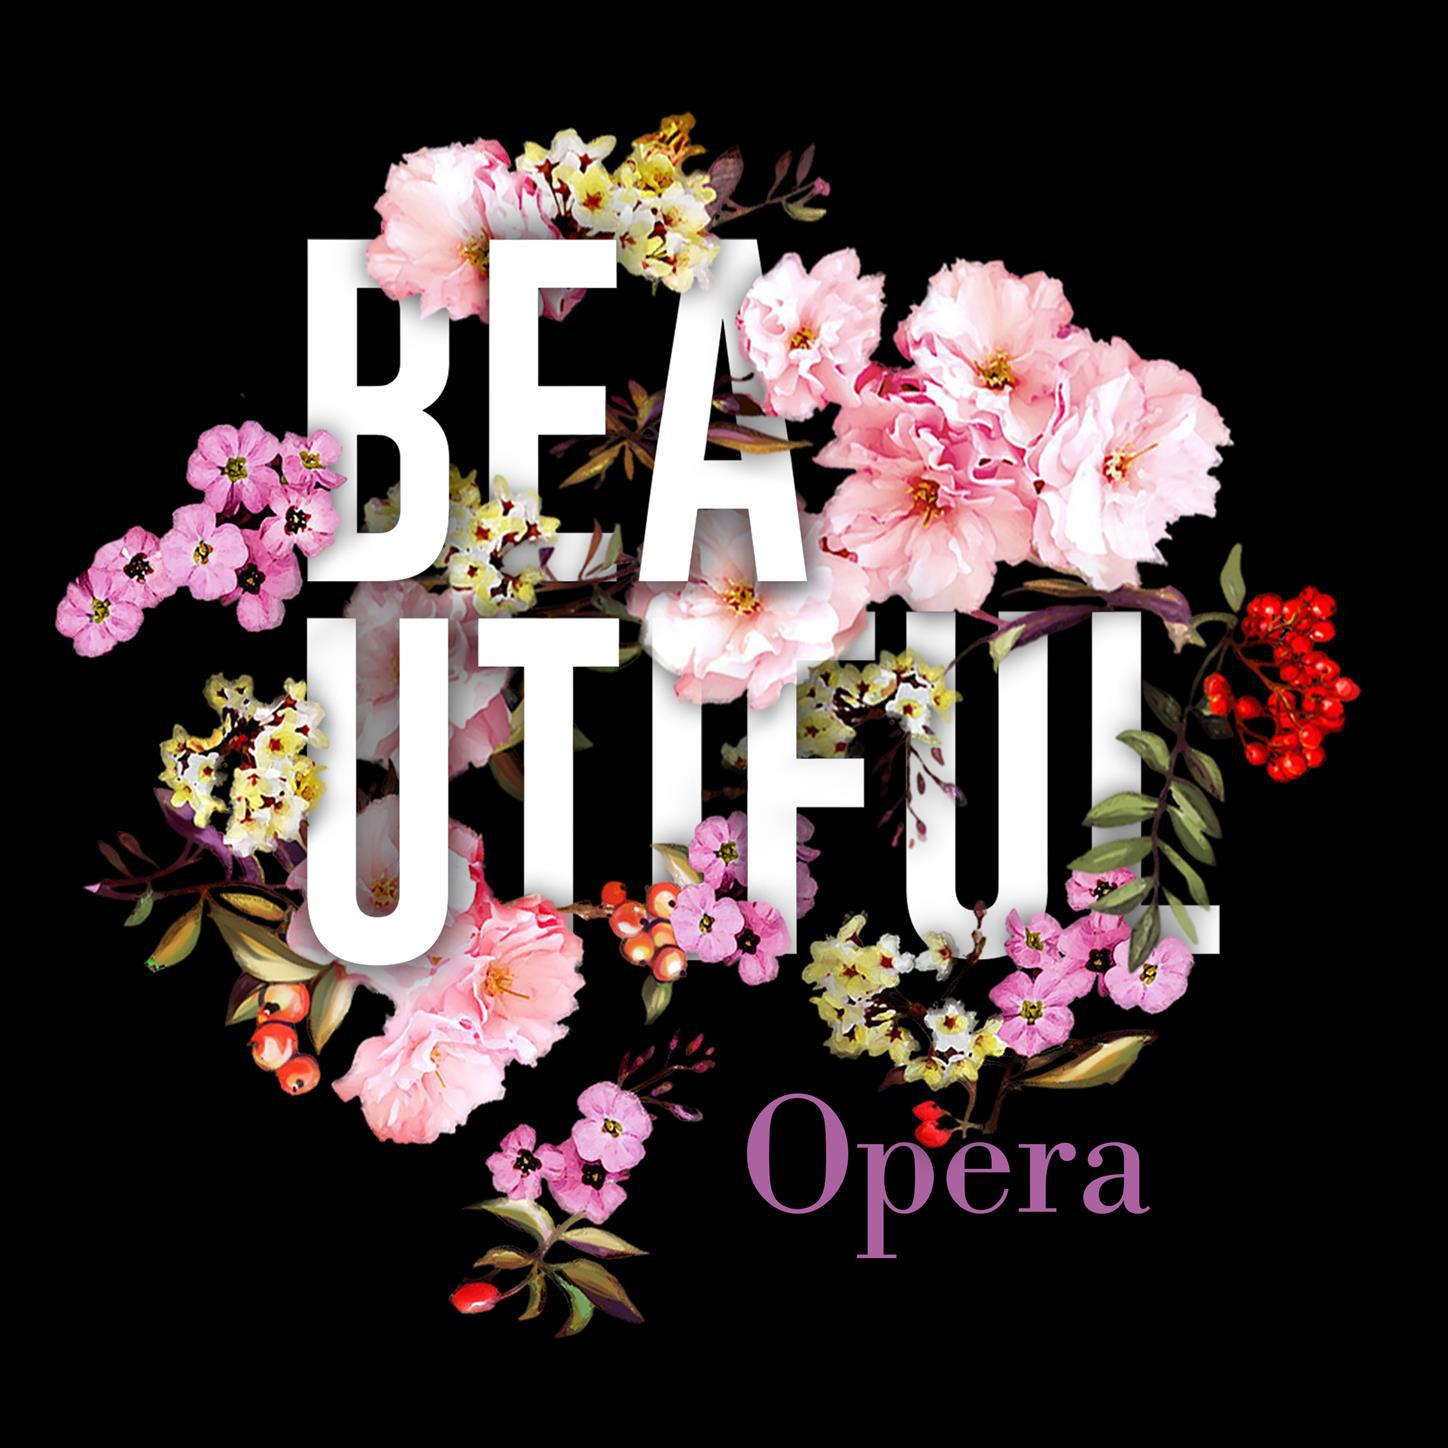 Beautiful Opera